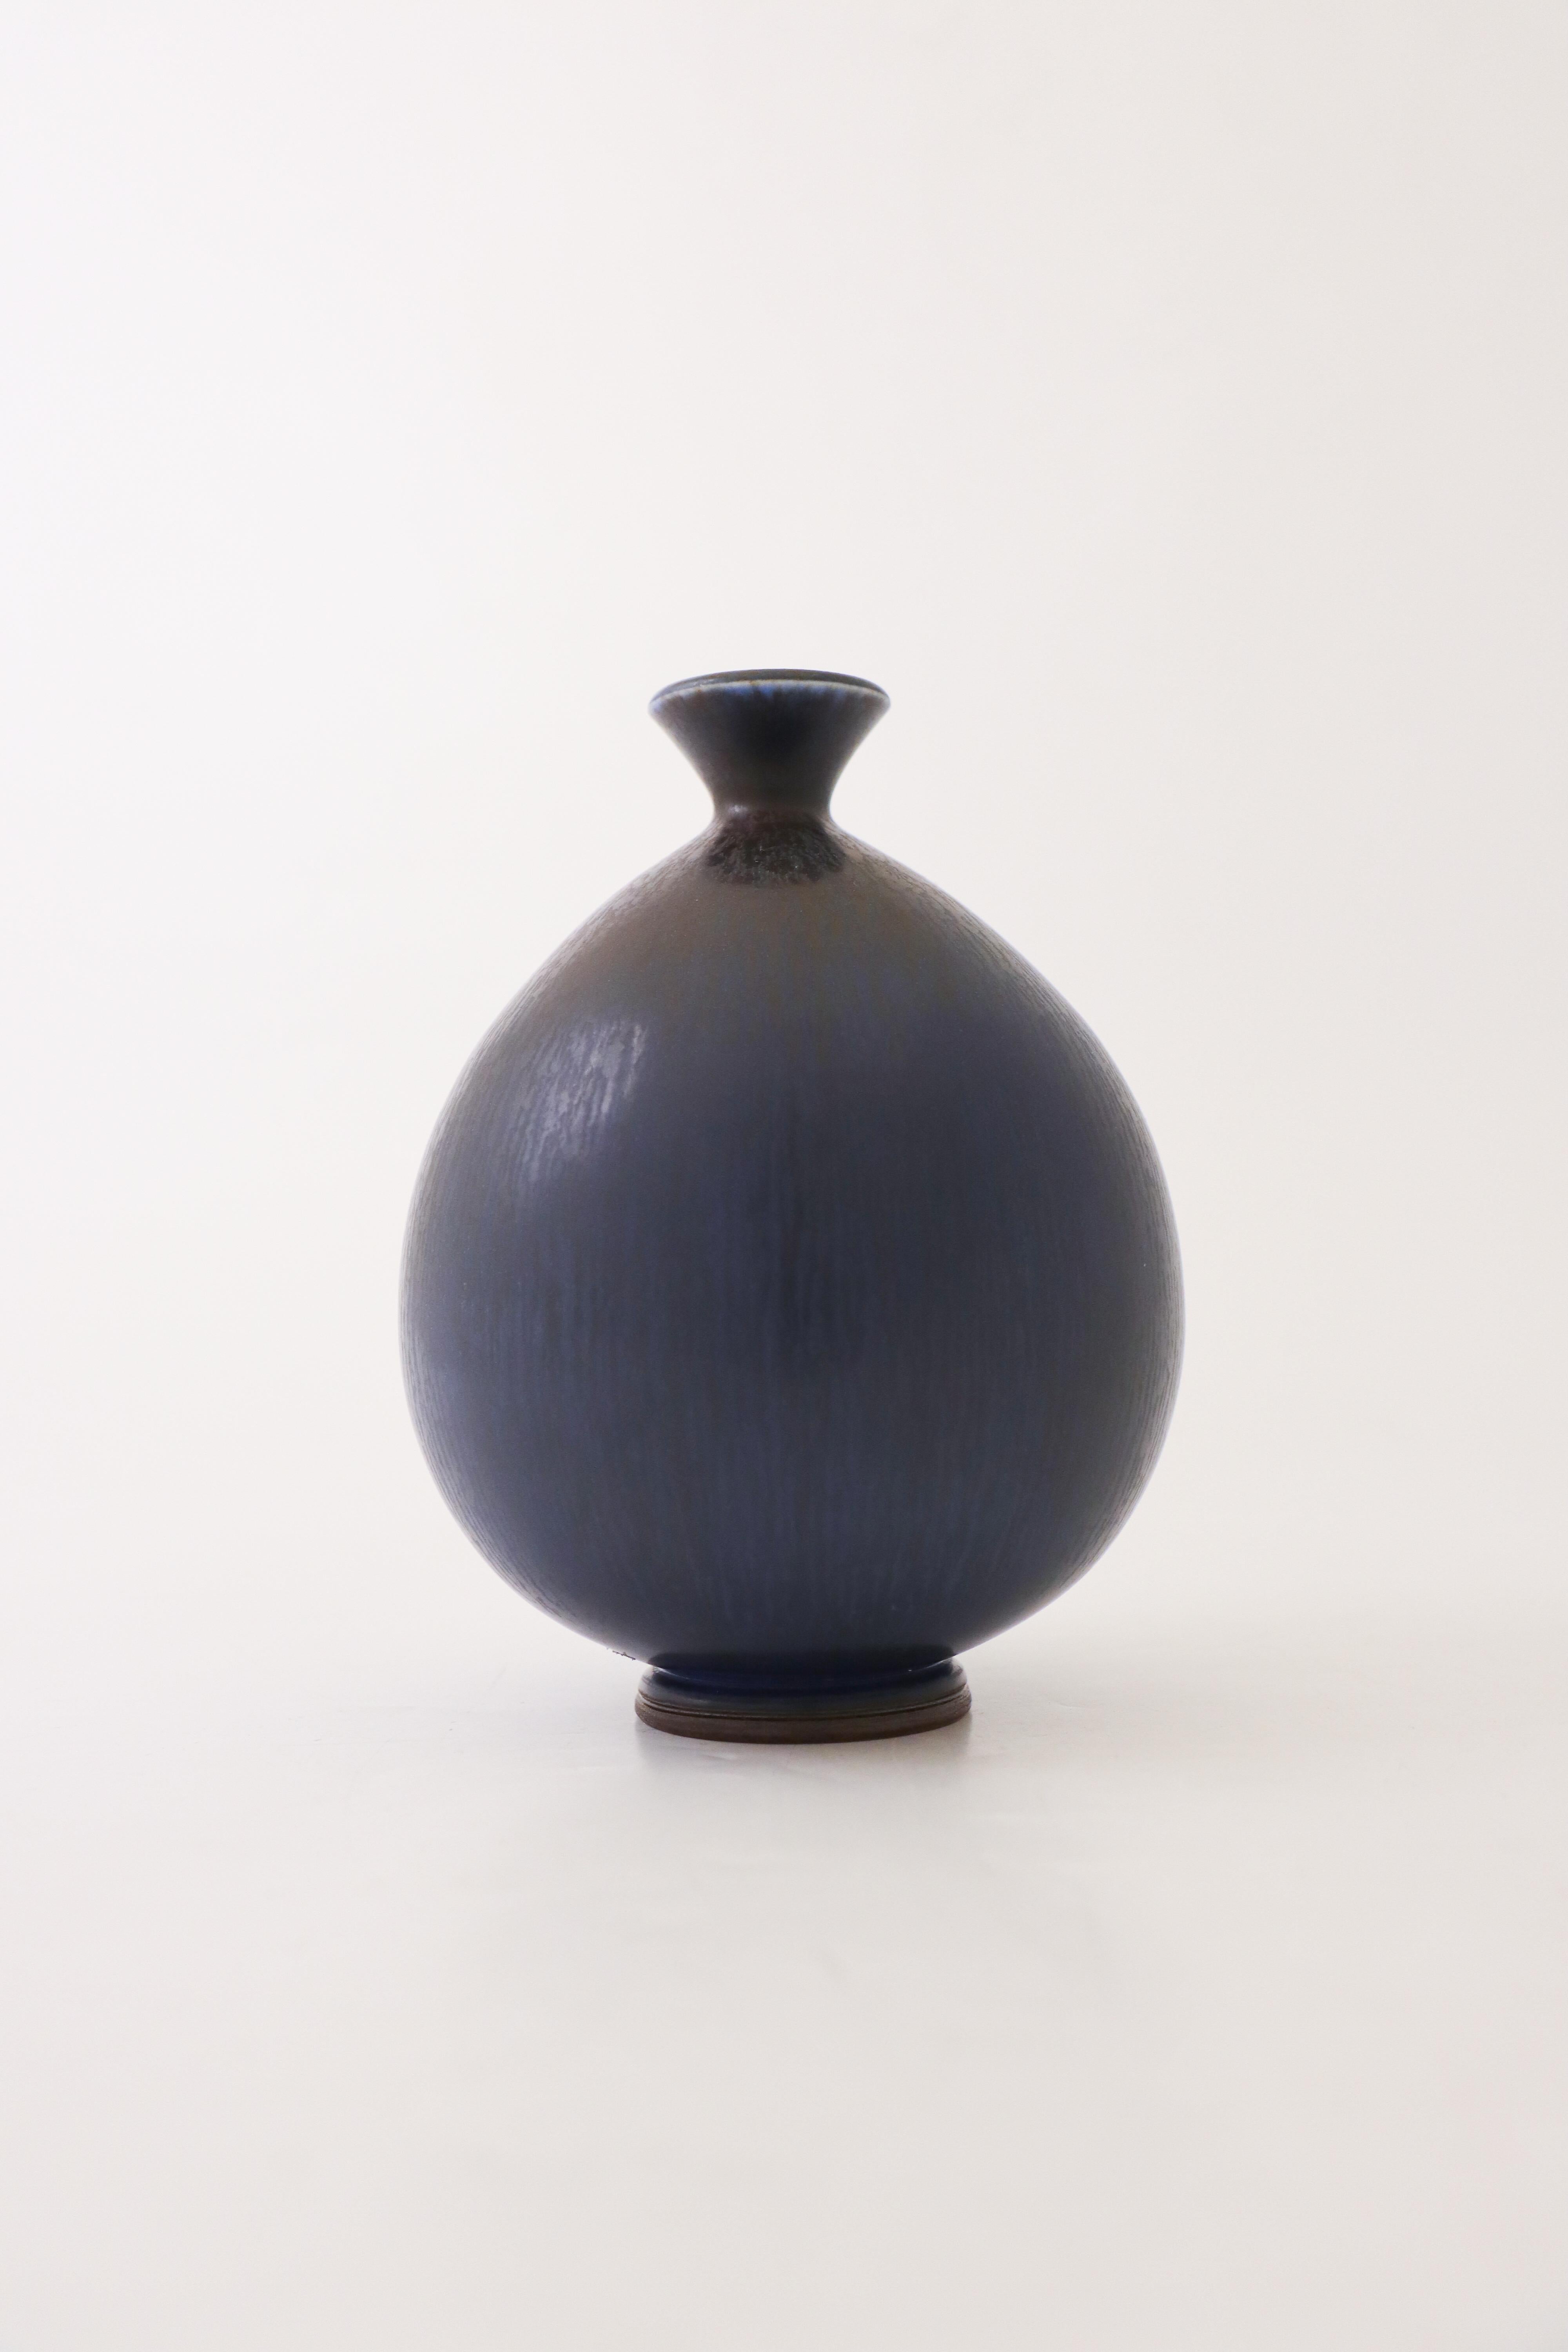 Suédois Ravissant vase en céramique bleue, Berndt Friberg, Gustavsberg 1972